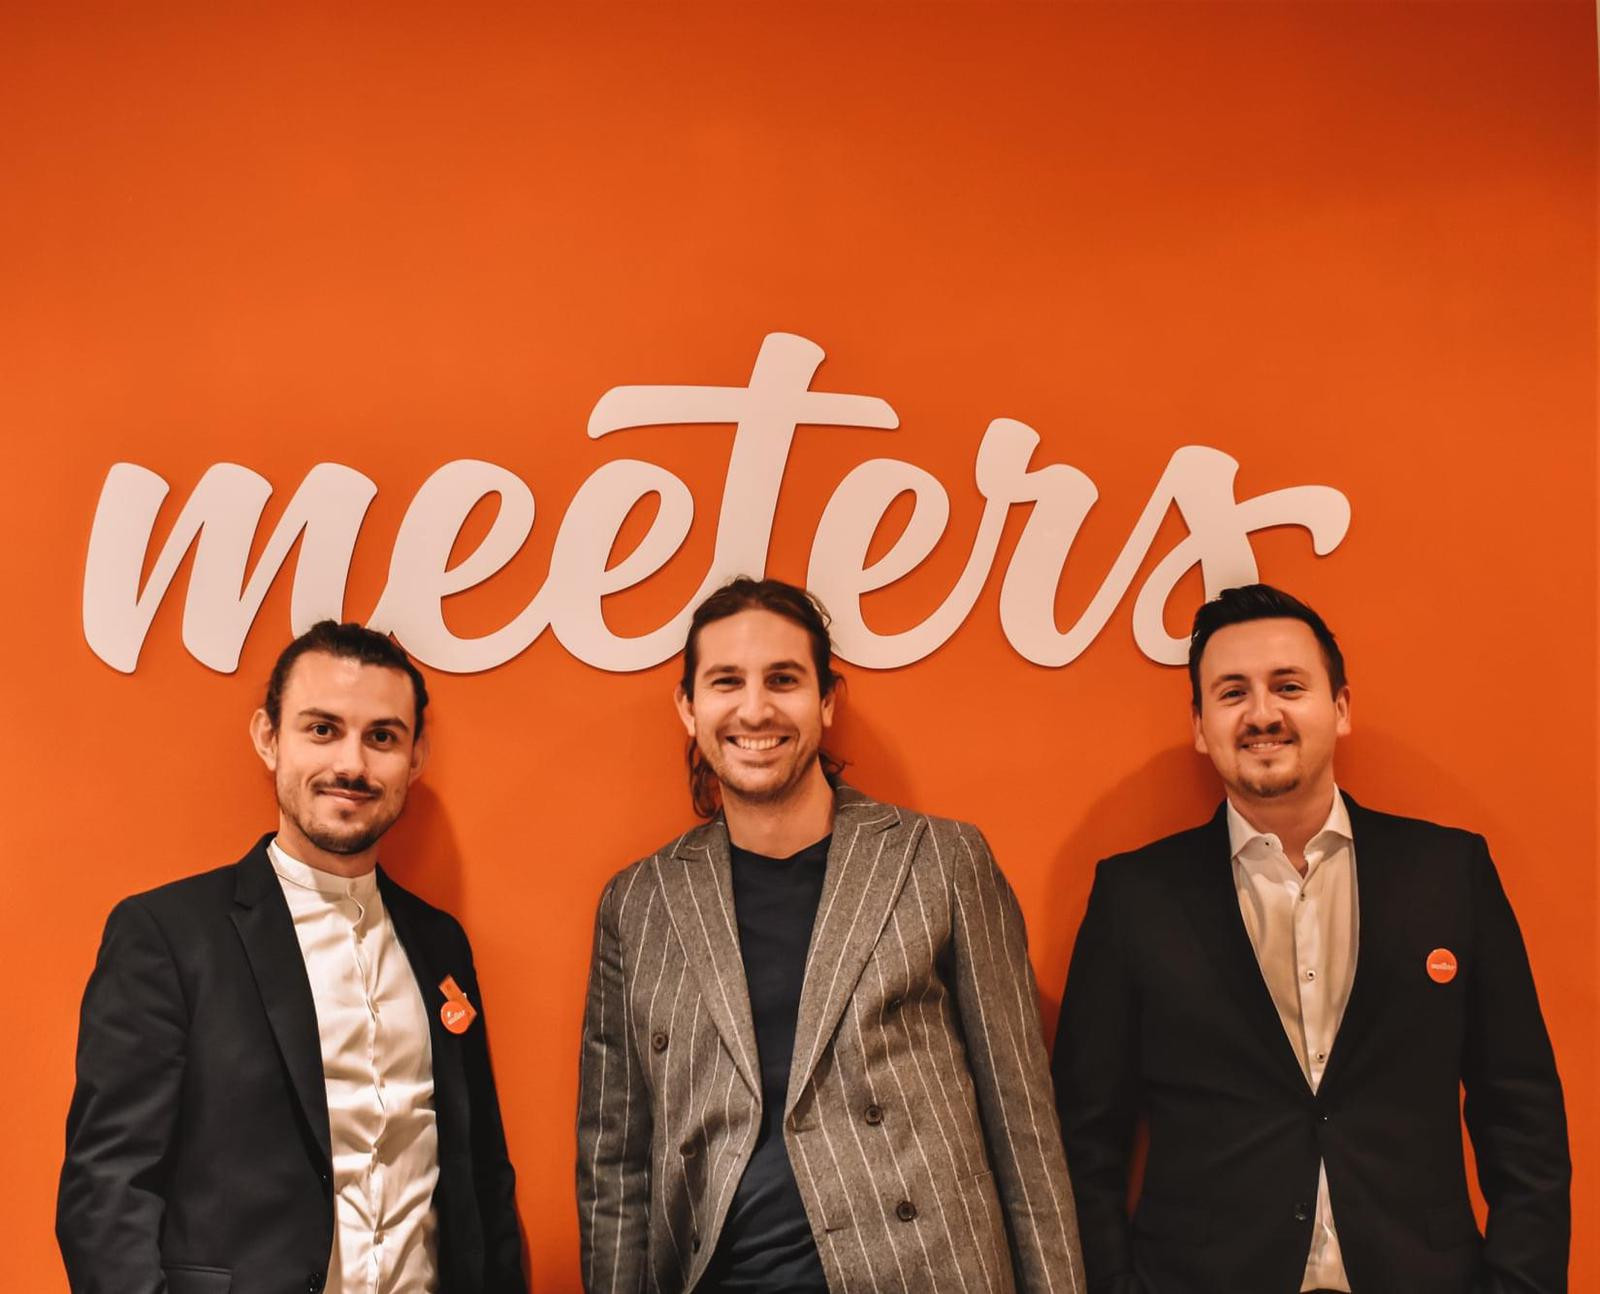 Meeters, la campagna di crowdfunding raggiunge 1,2 milioni, tutto pronto per un 2022 di crescita